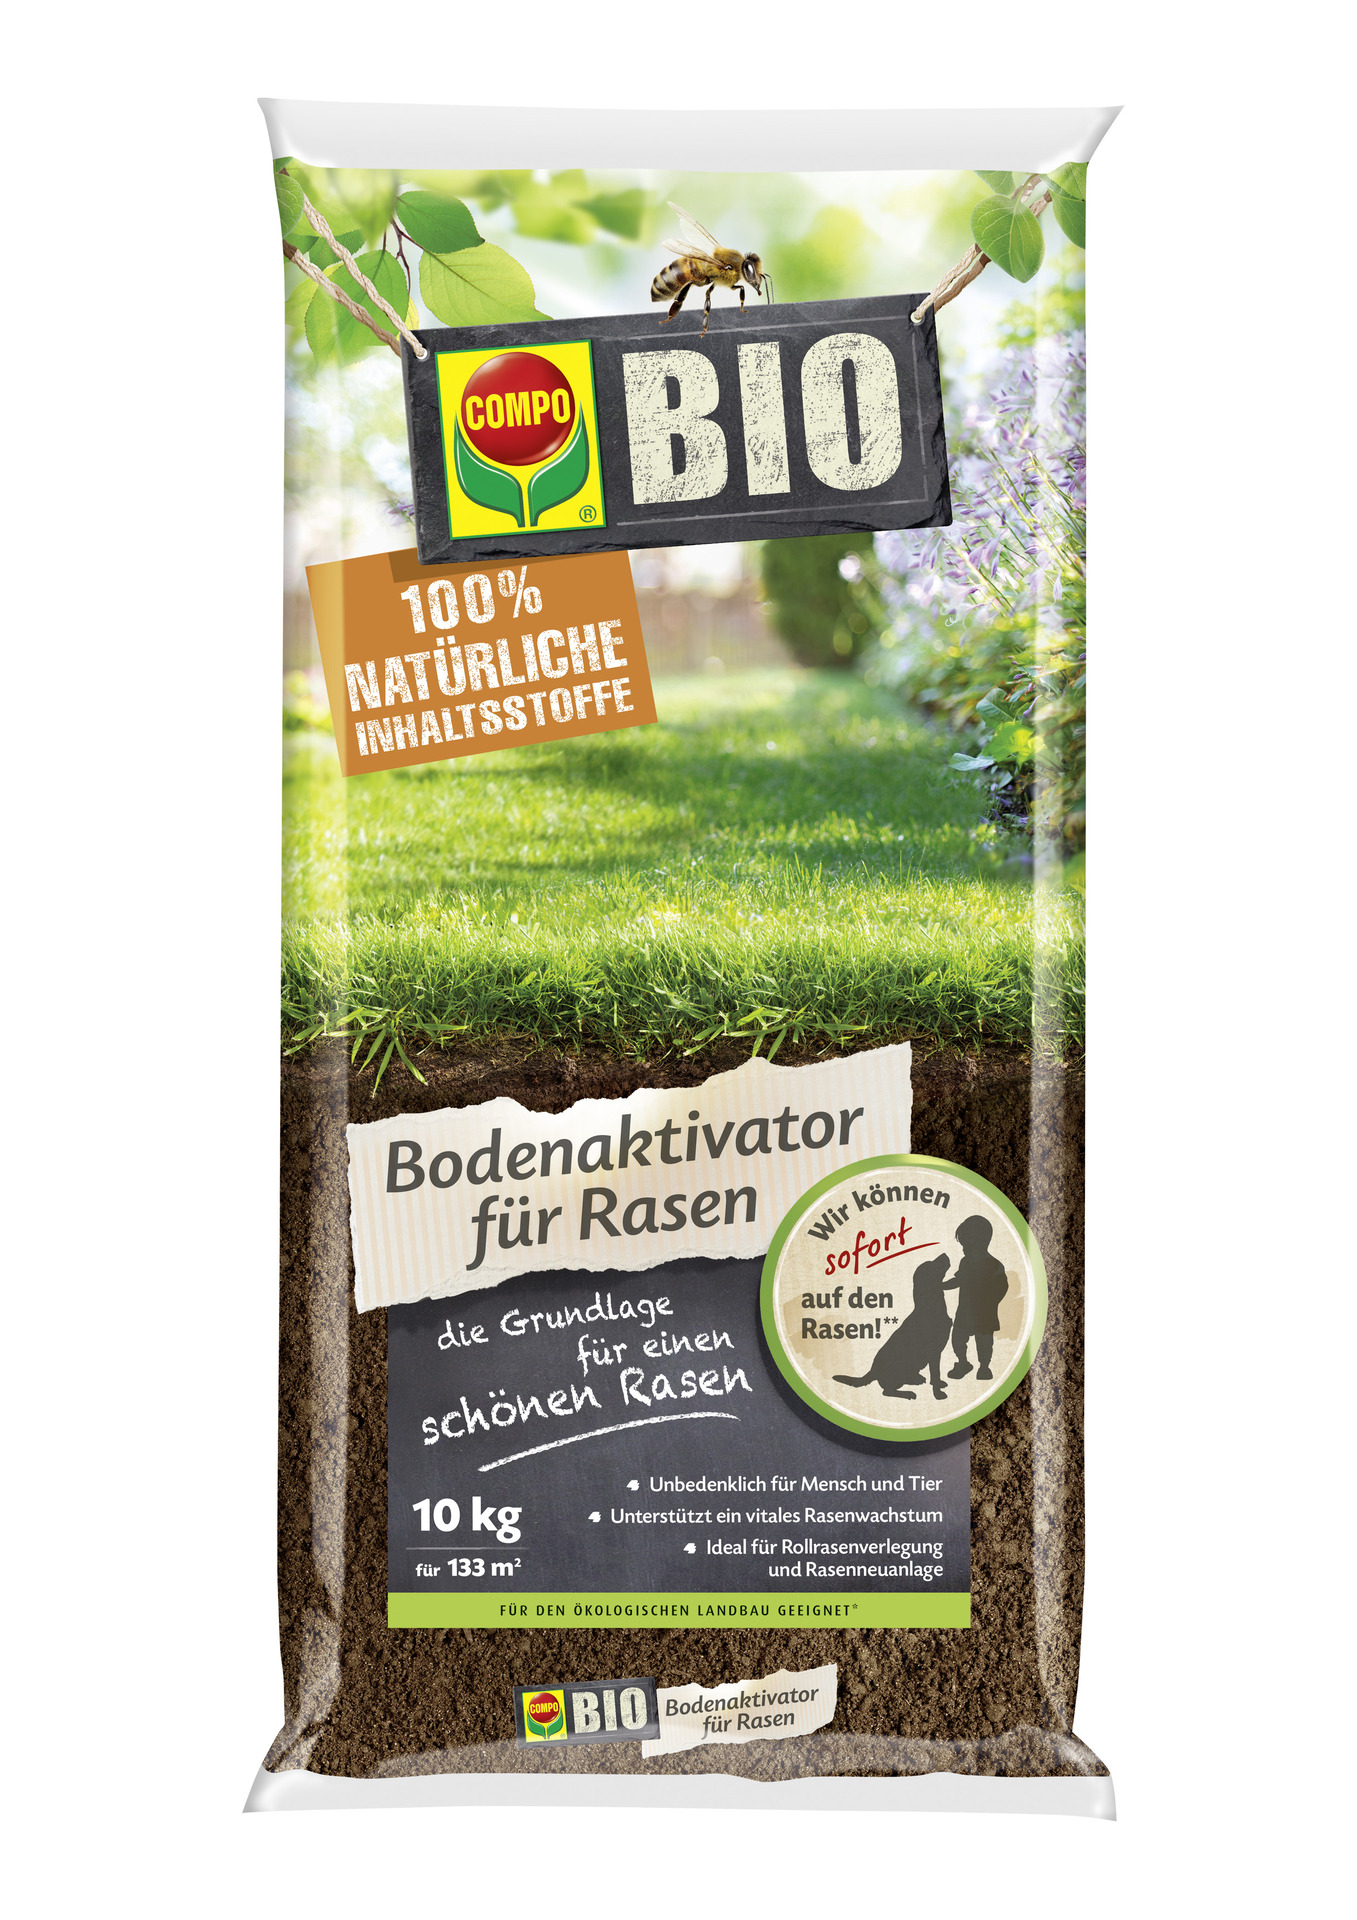 Compo BIO Bodenaktivator für Rasen 10 kg